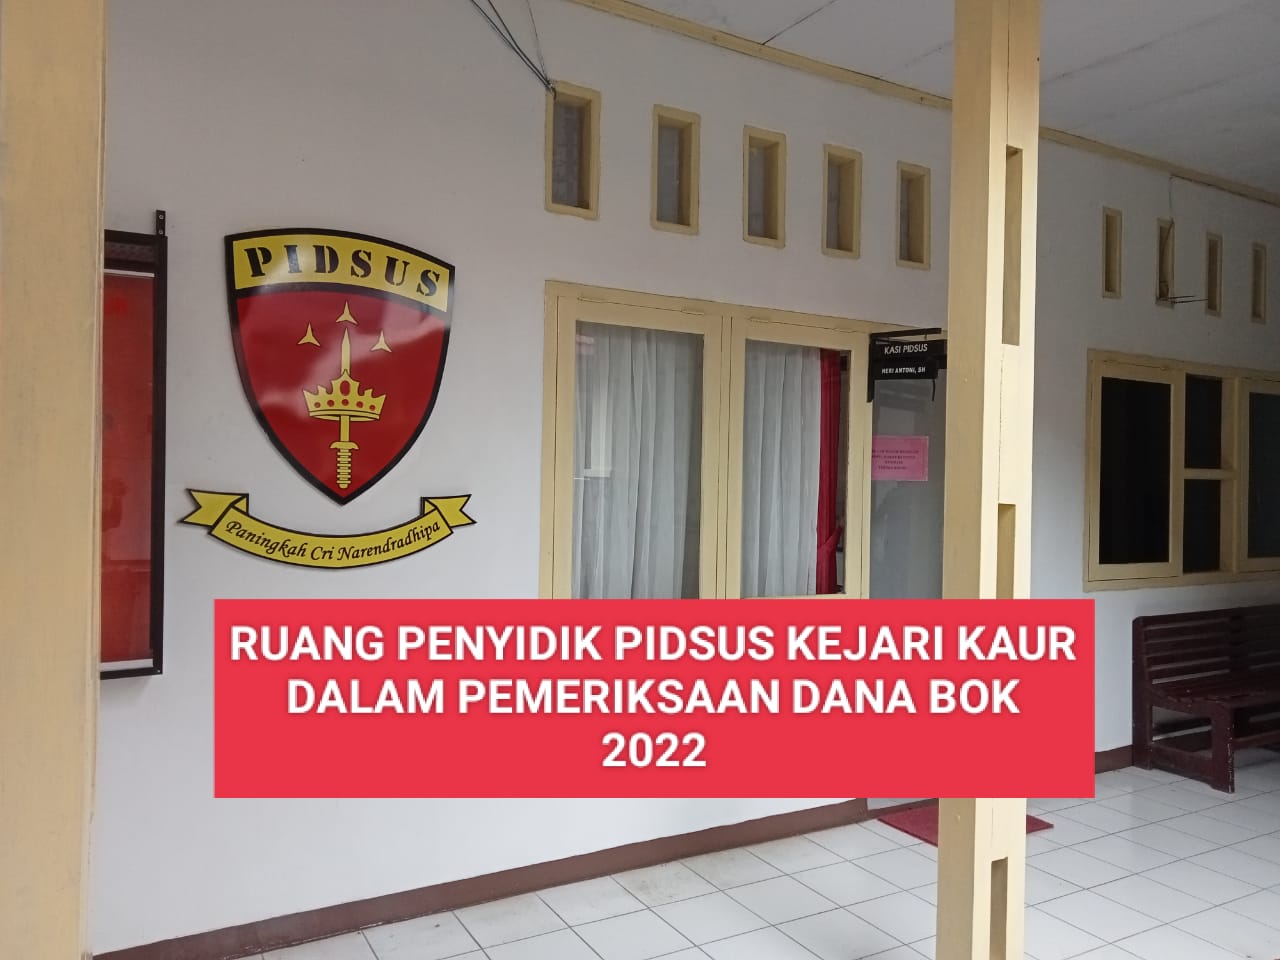 Pak Bu Kapus! Sudah, Jujur Saja soal Dana BOK 2022! Tak Usah Ditutupi, Nanti 'Nanggung' Sendiri! 